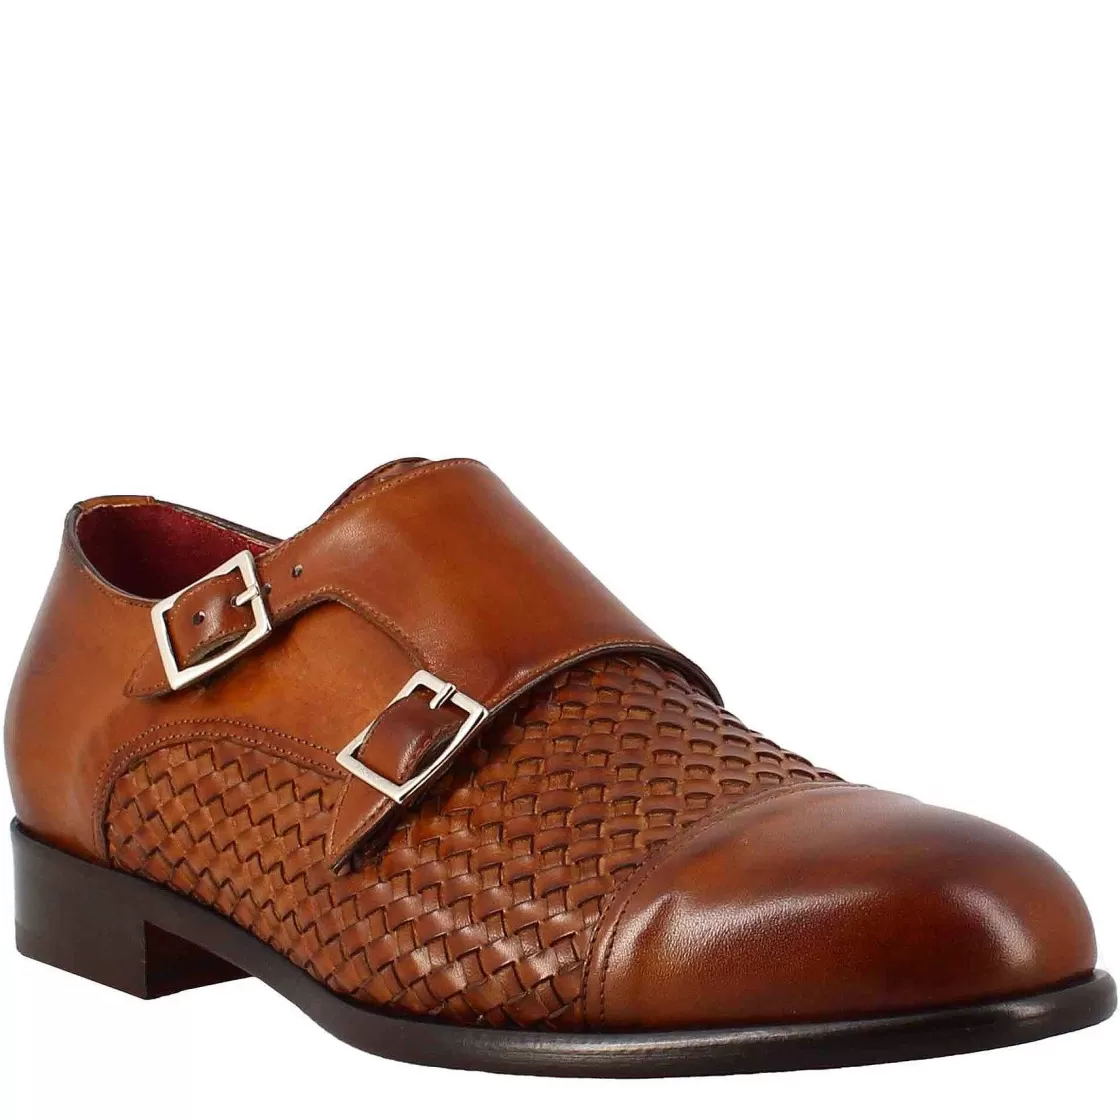 Leonardo Men'S Double Buckle Shoe In Sienna Brown Woven Leather Fashion